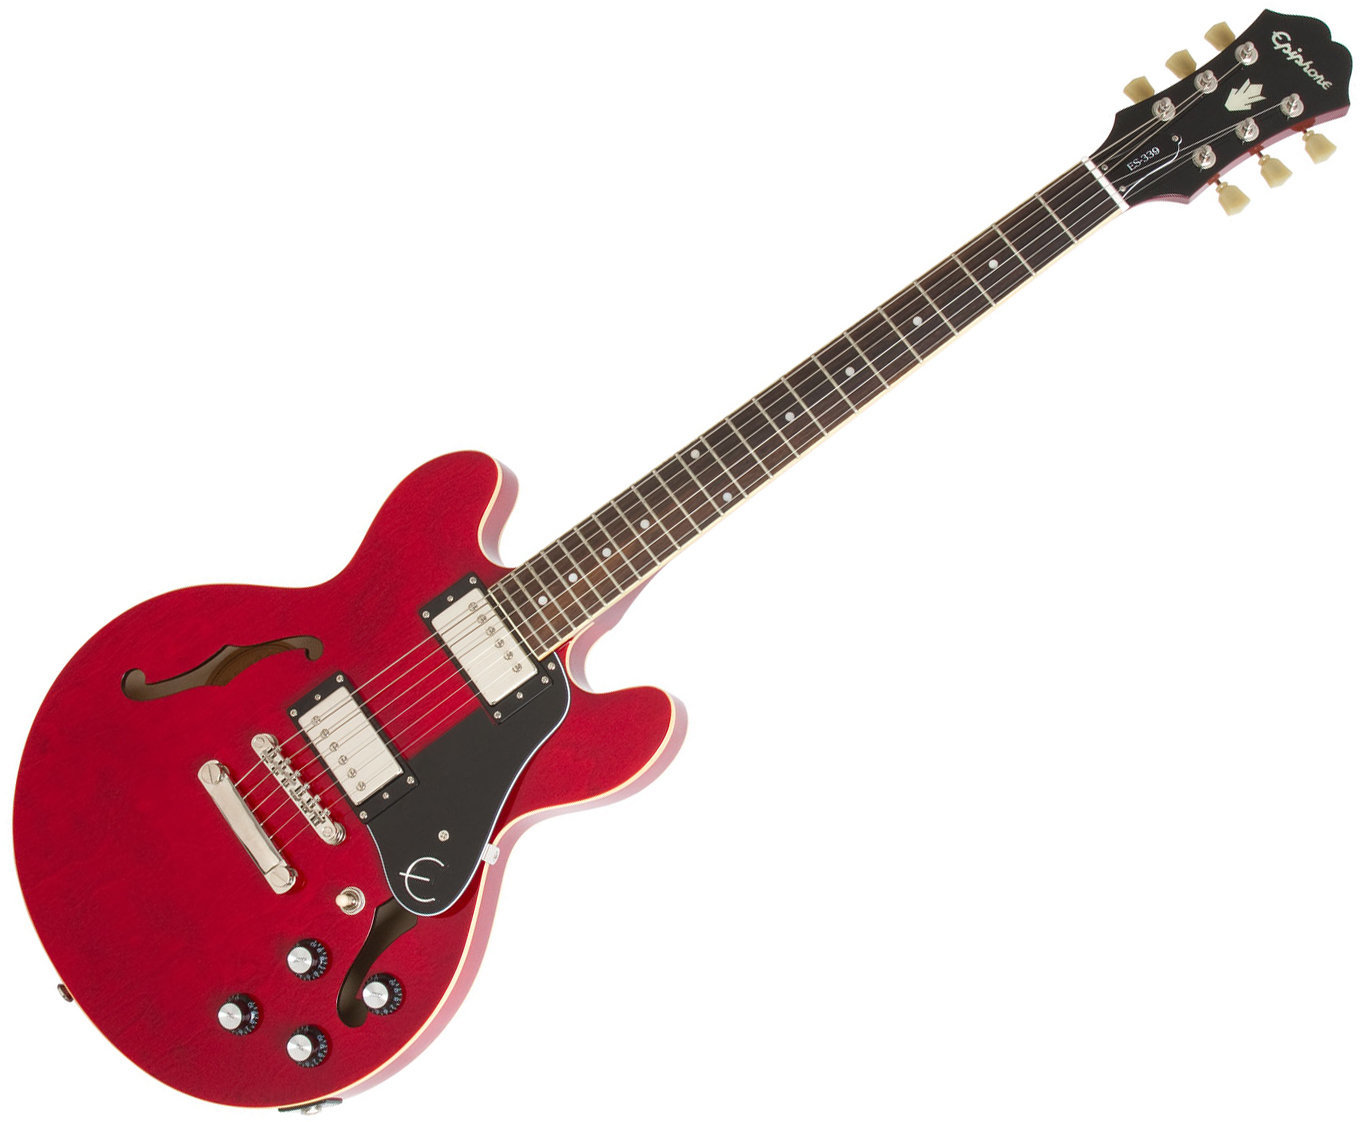 Gitara semi-akustyczna Epiphone Ultra-339 Cherry